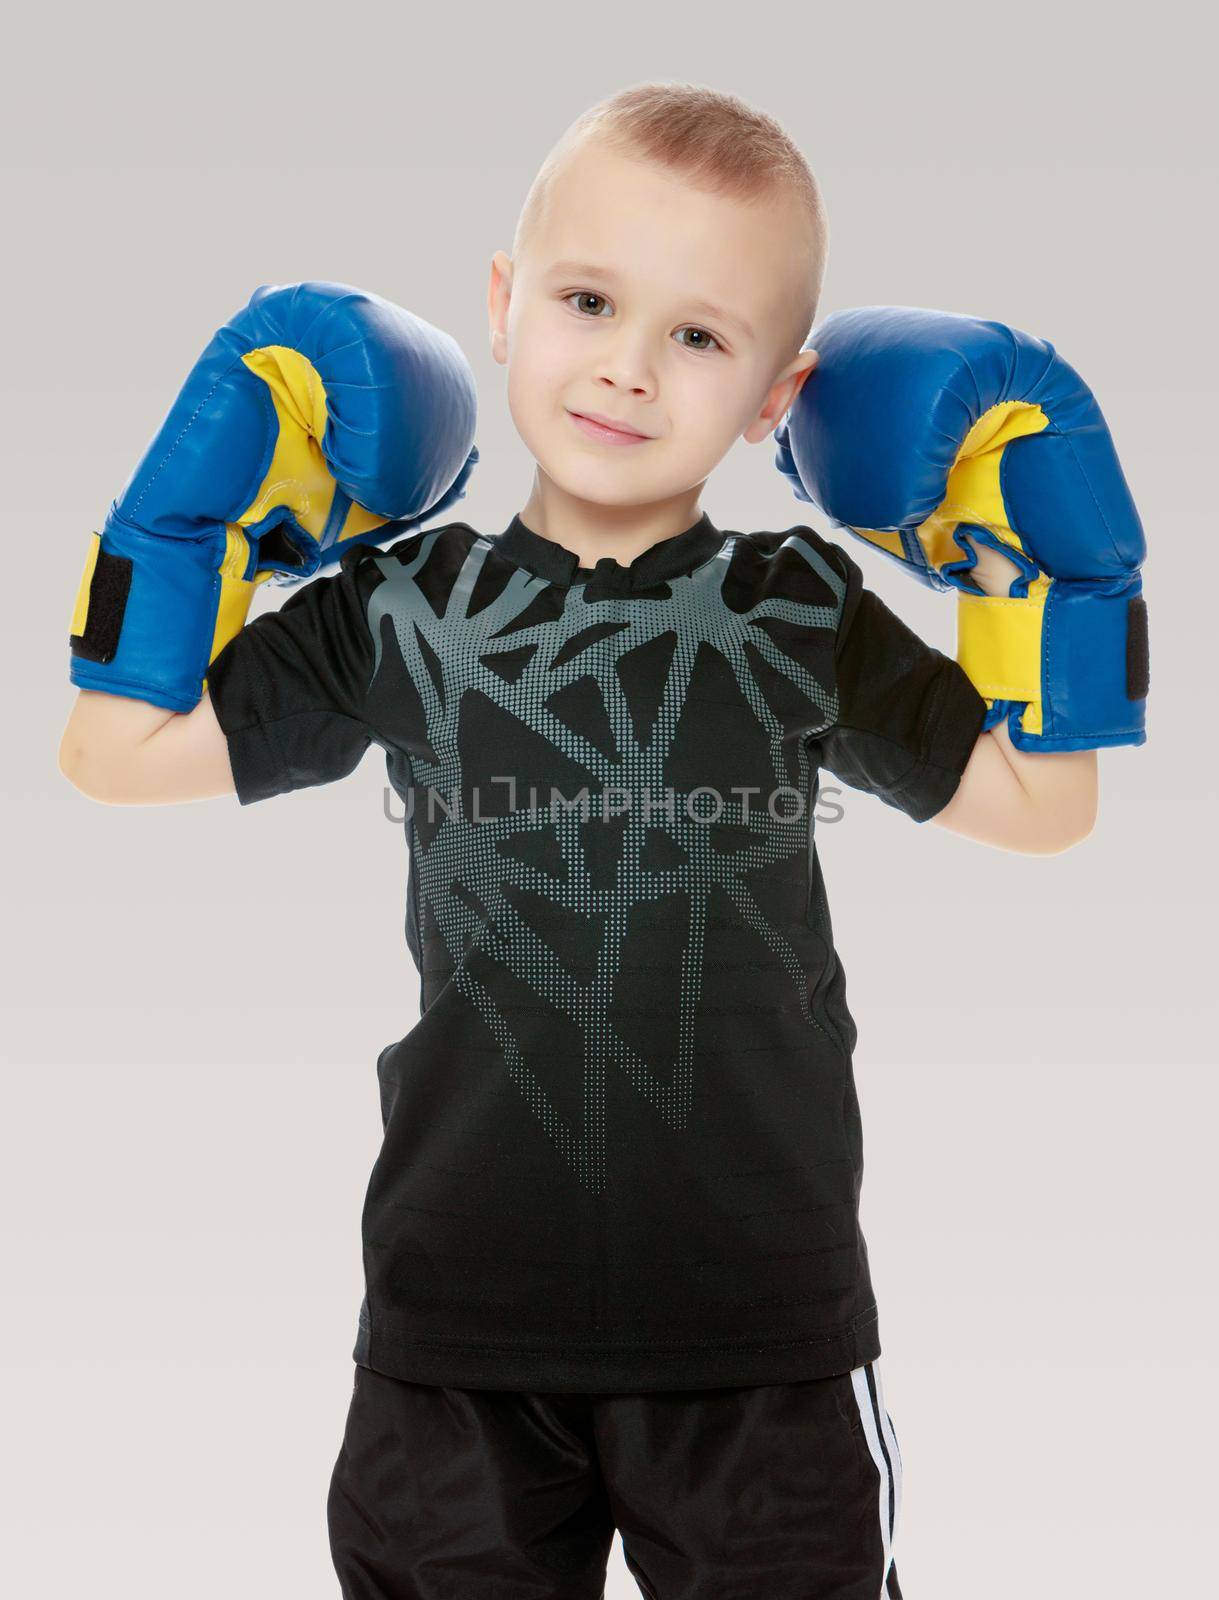 little boy in Boxing gloves. by kolesnikov_studio